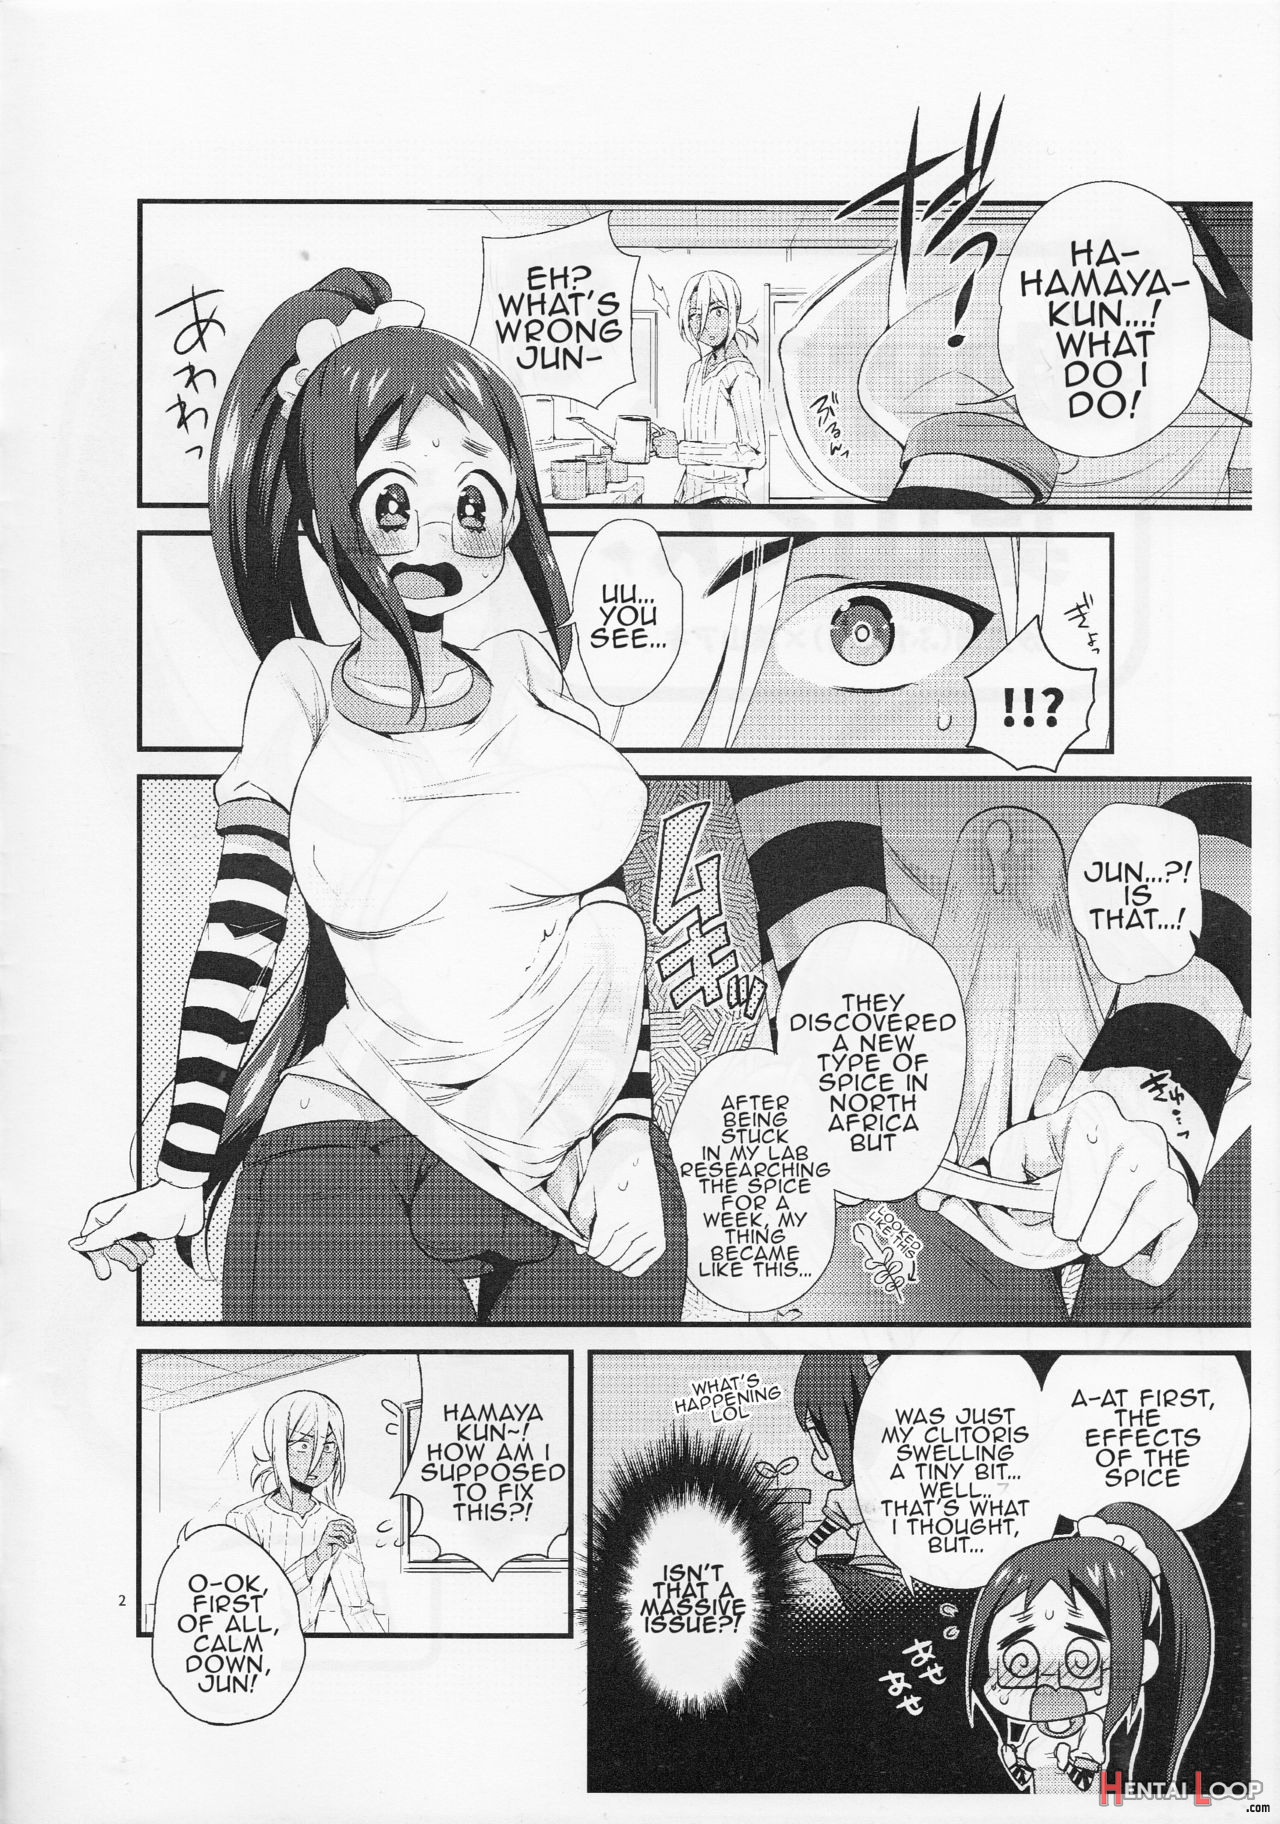 Tasukete! Hayama-kun page 2